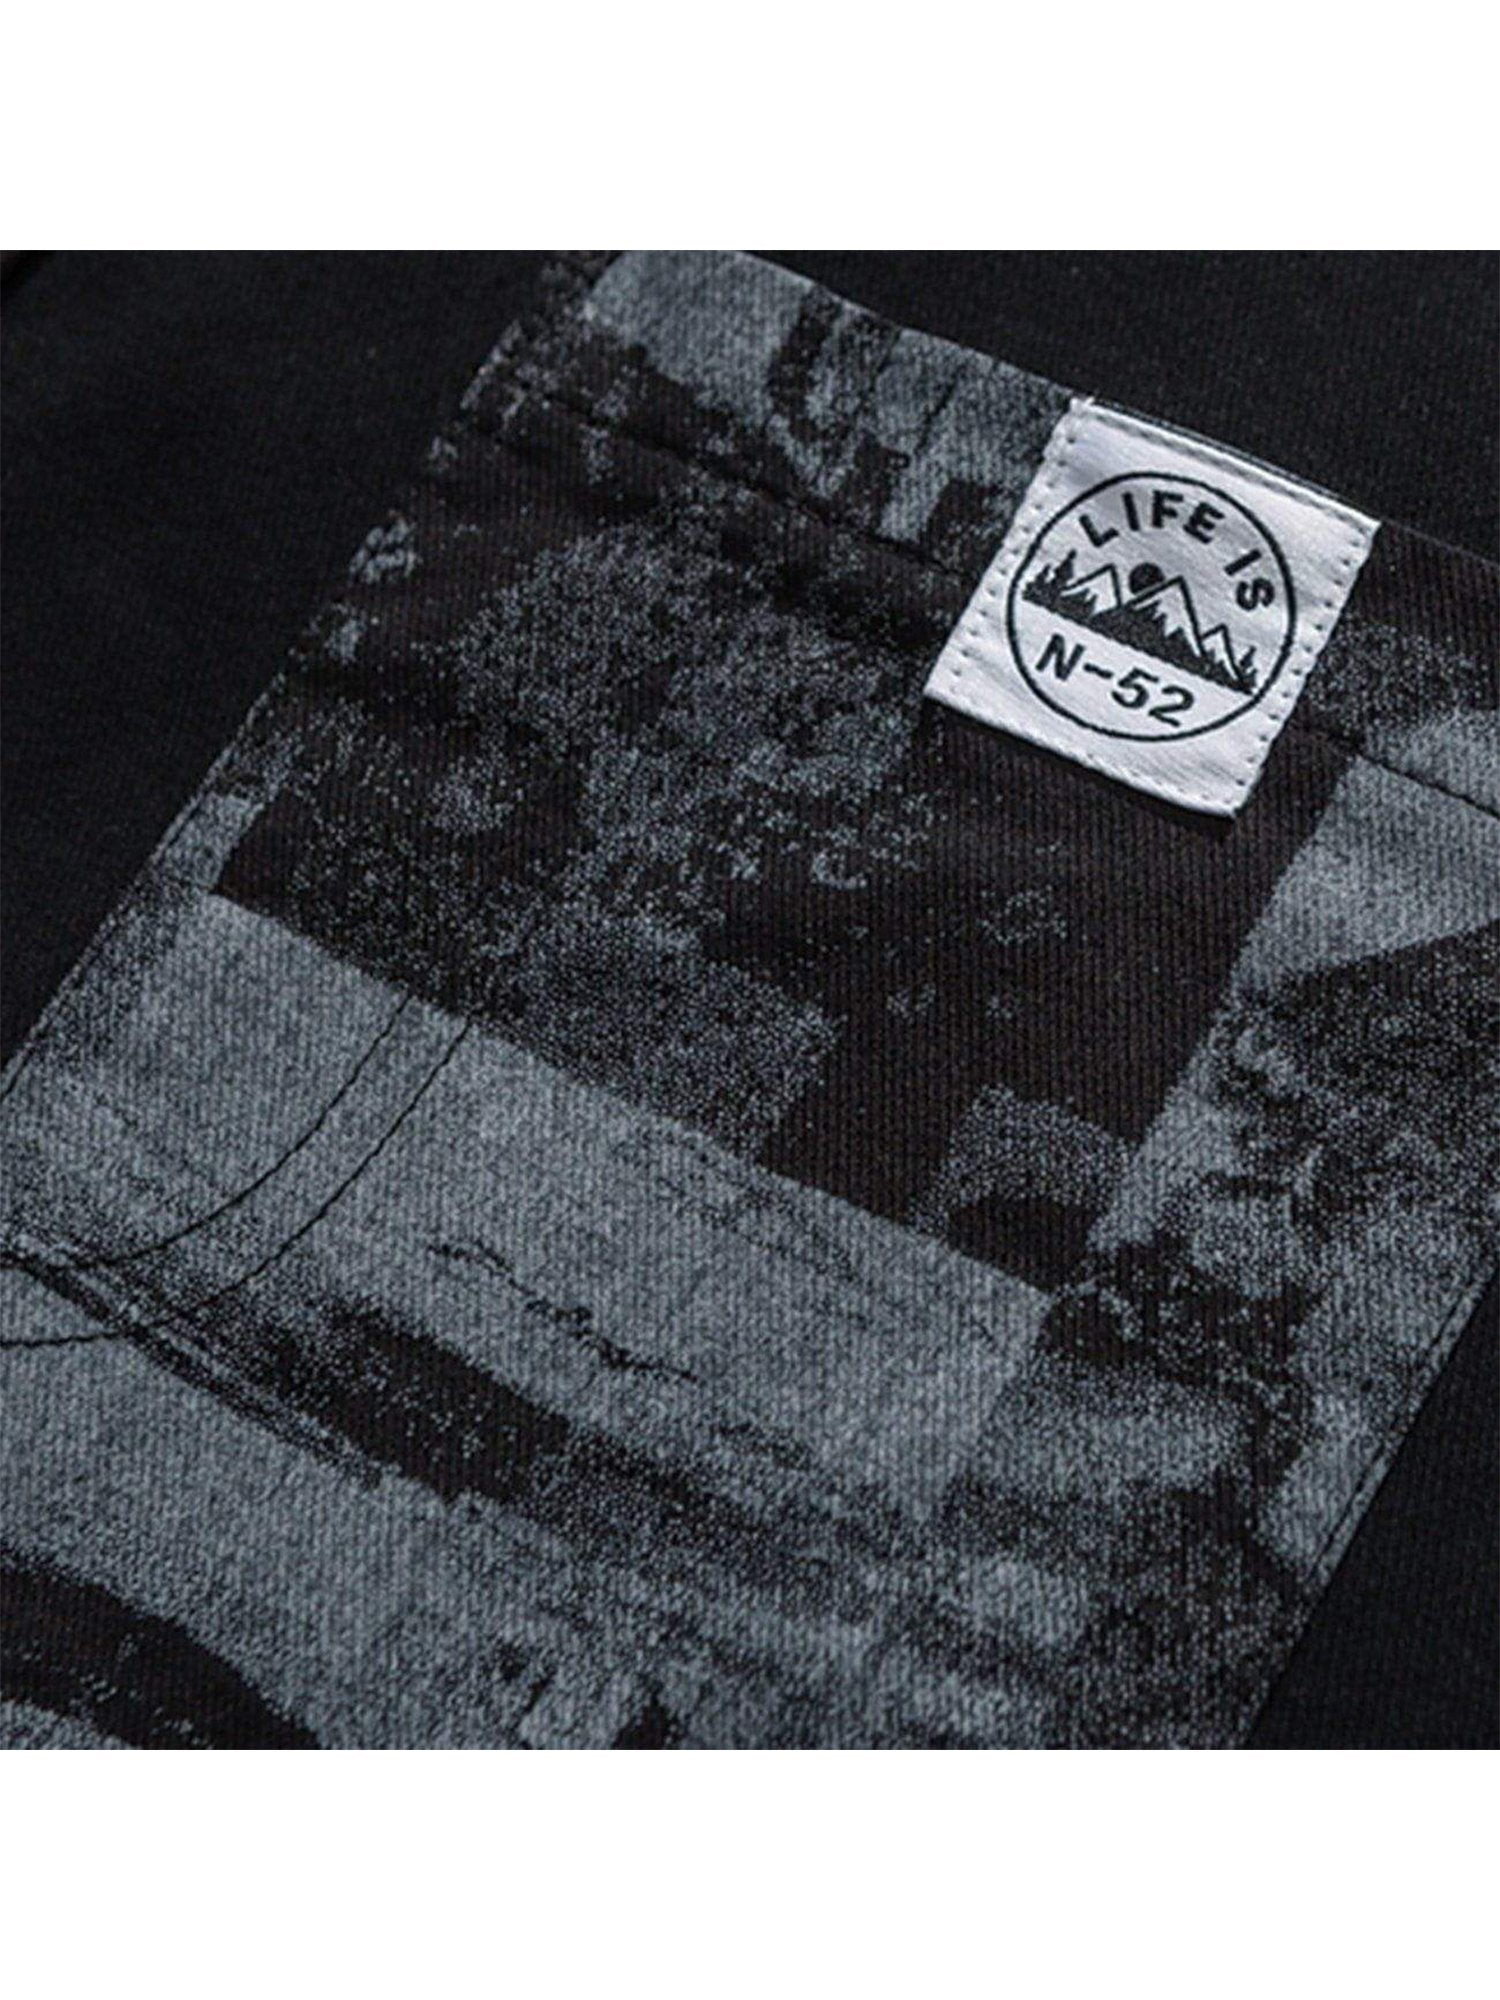 JUSTNOTAG Chemises à manches courtes et panneaux imprimés vintage